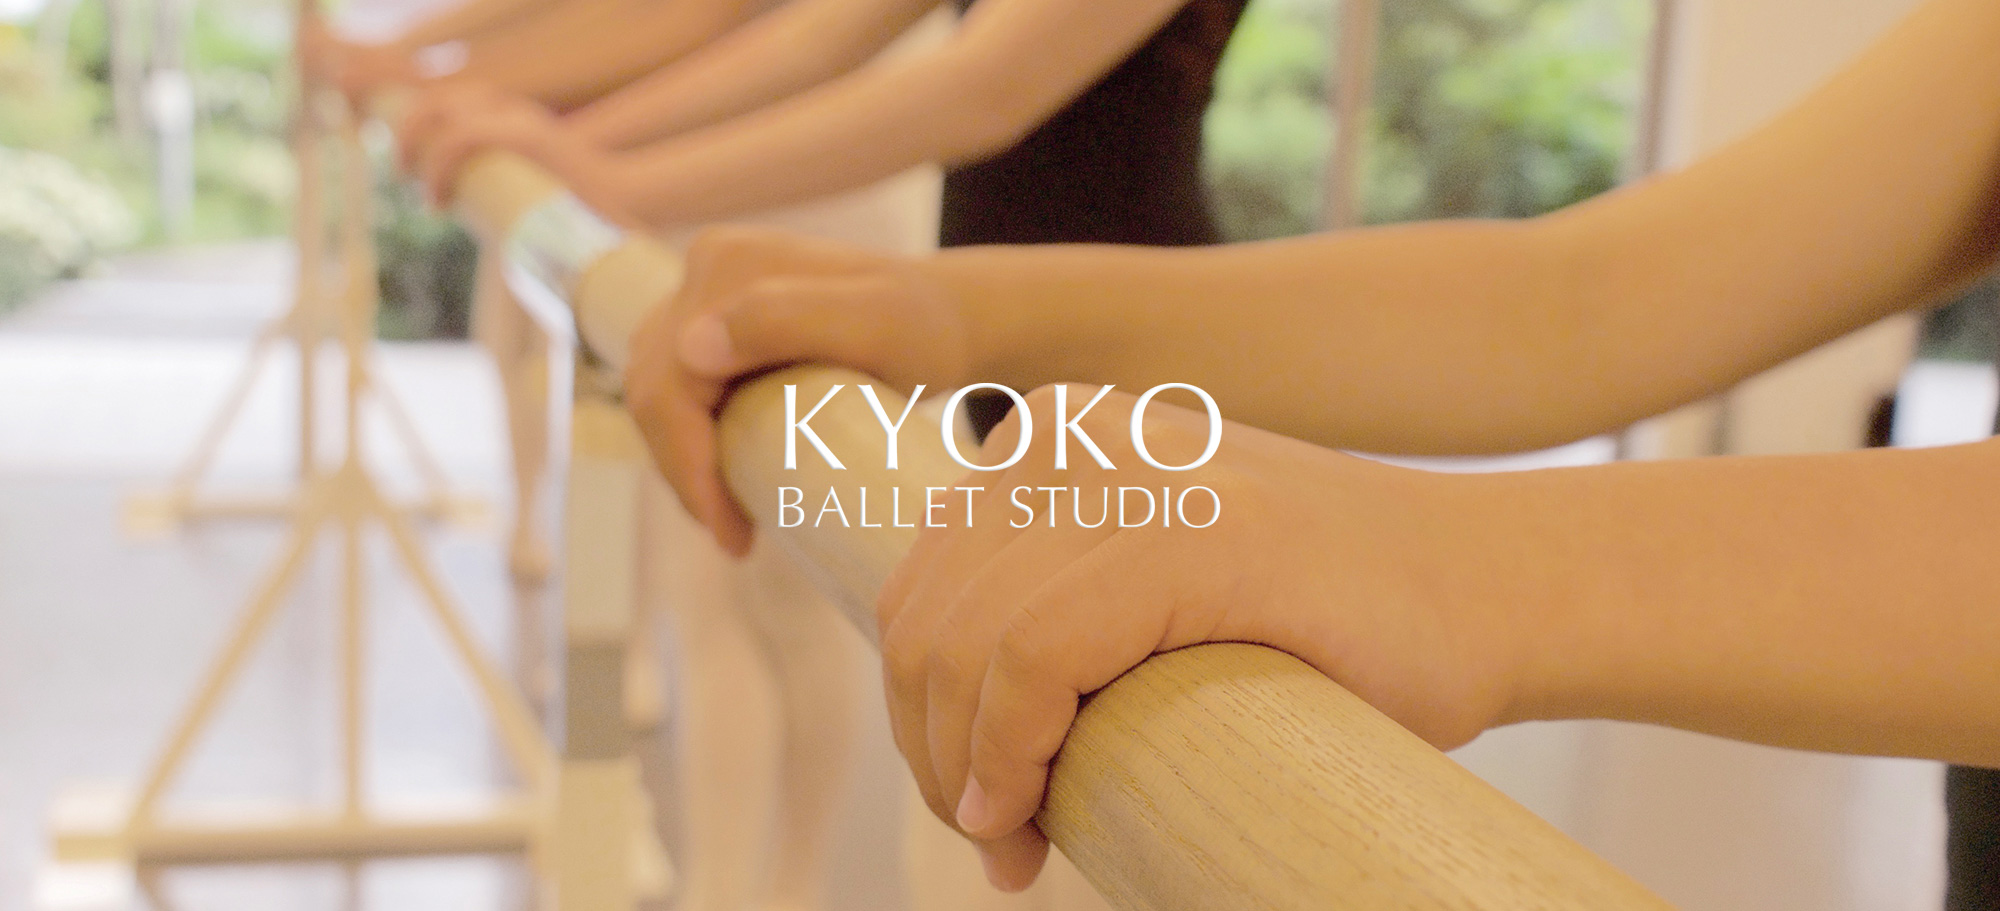 KYOKO BALLET STUDIO